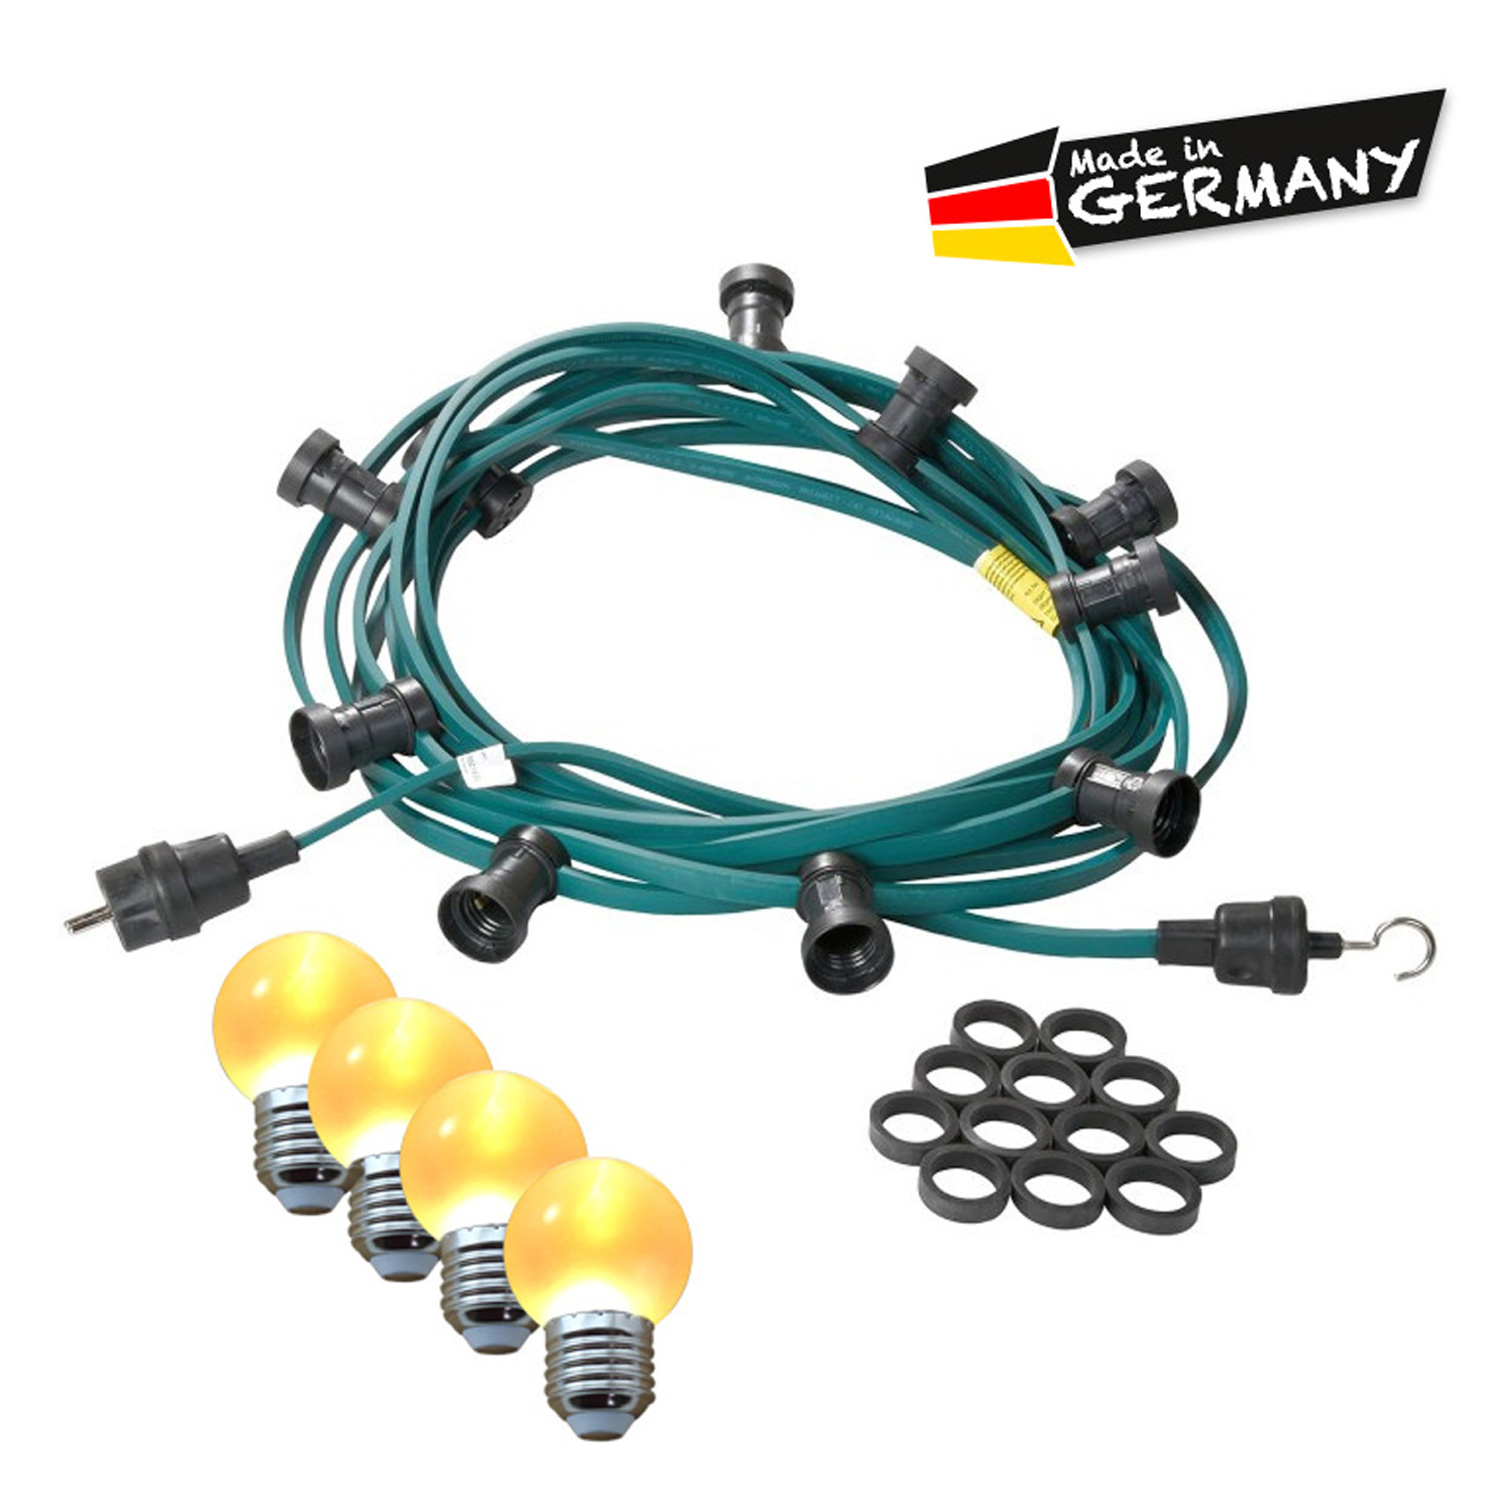 Illu-/Partylichterkette 20m | Außenlichterkette | Made in Germany | 30 x ultra-warmweisse LED Kugeln